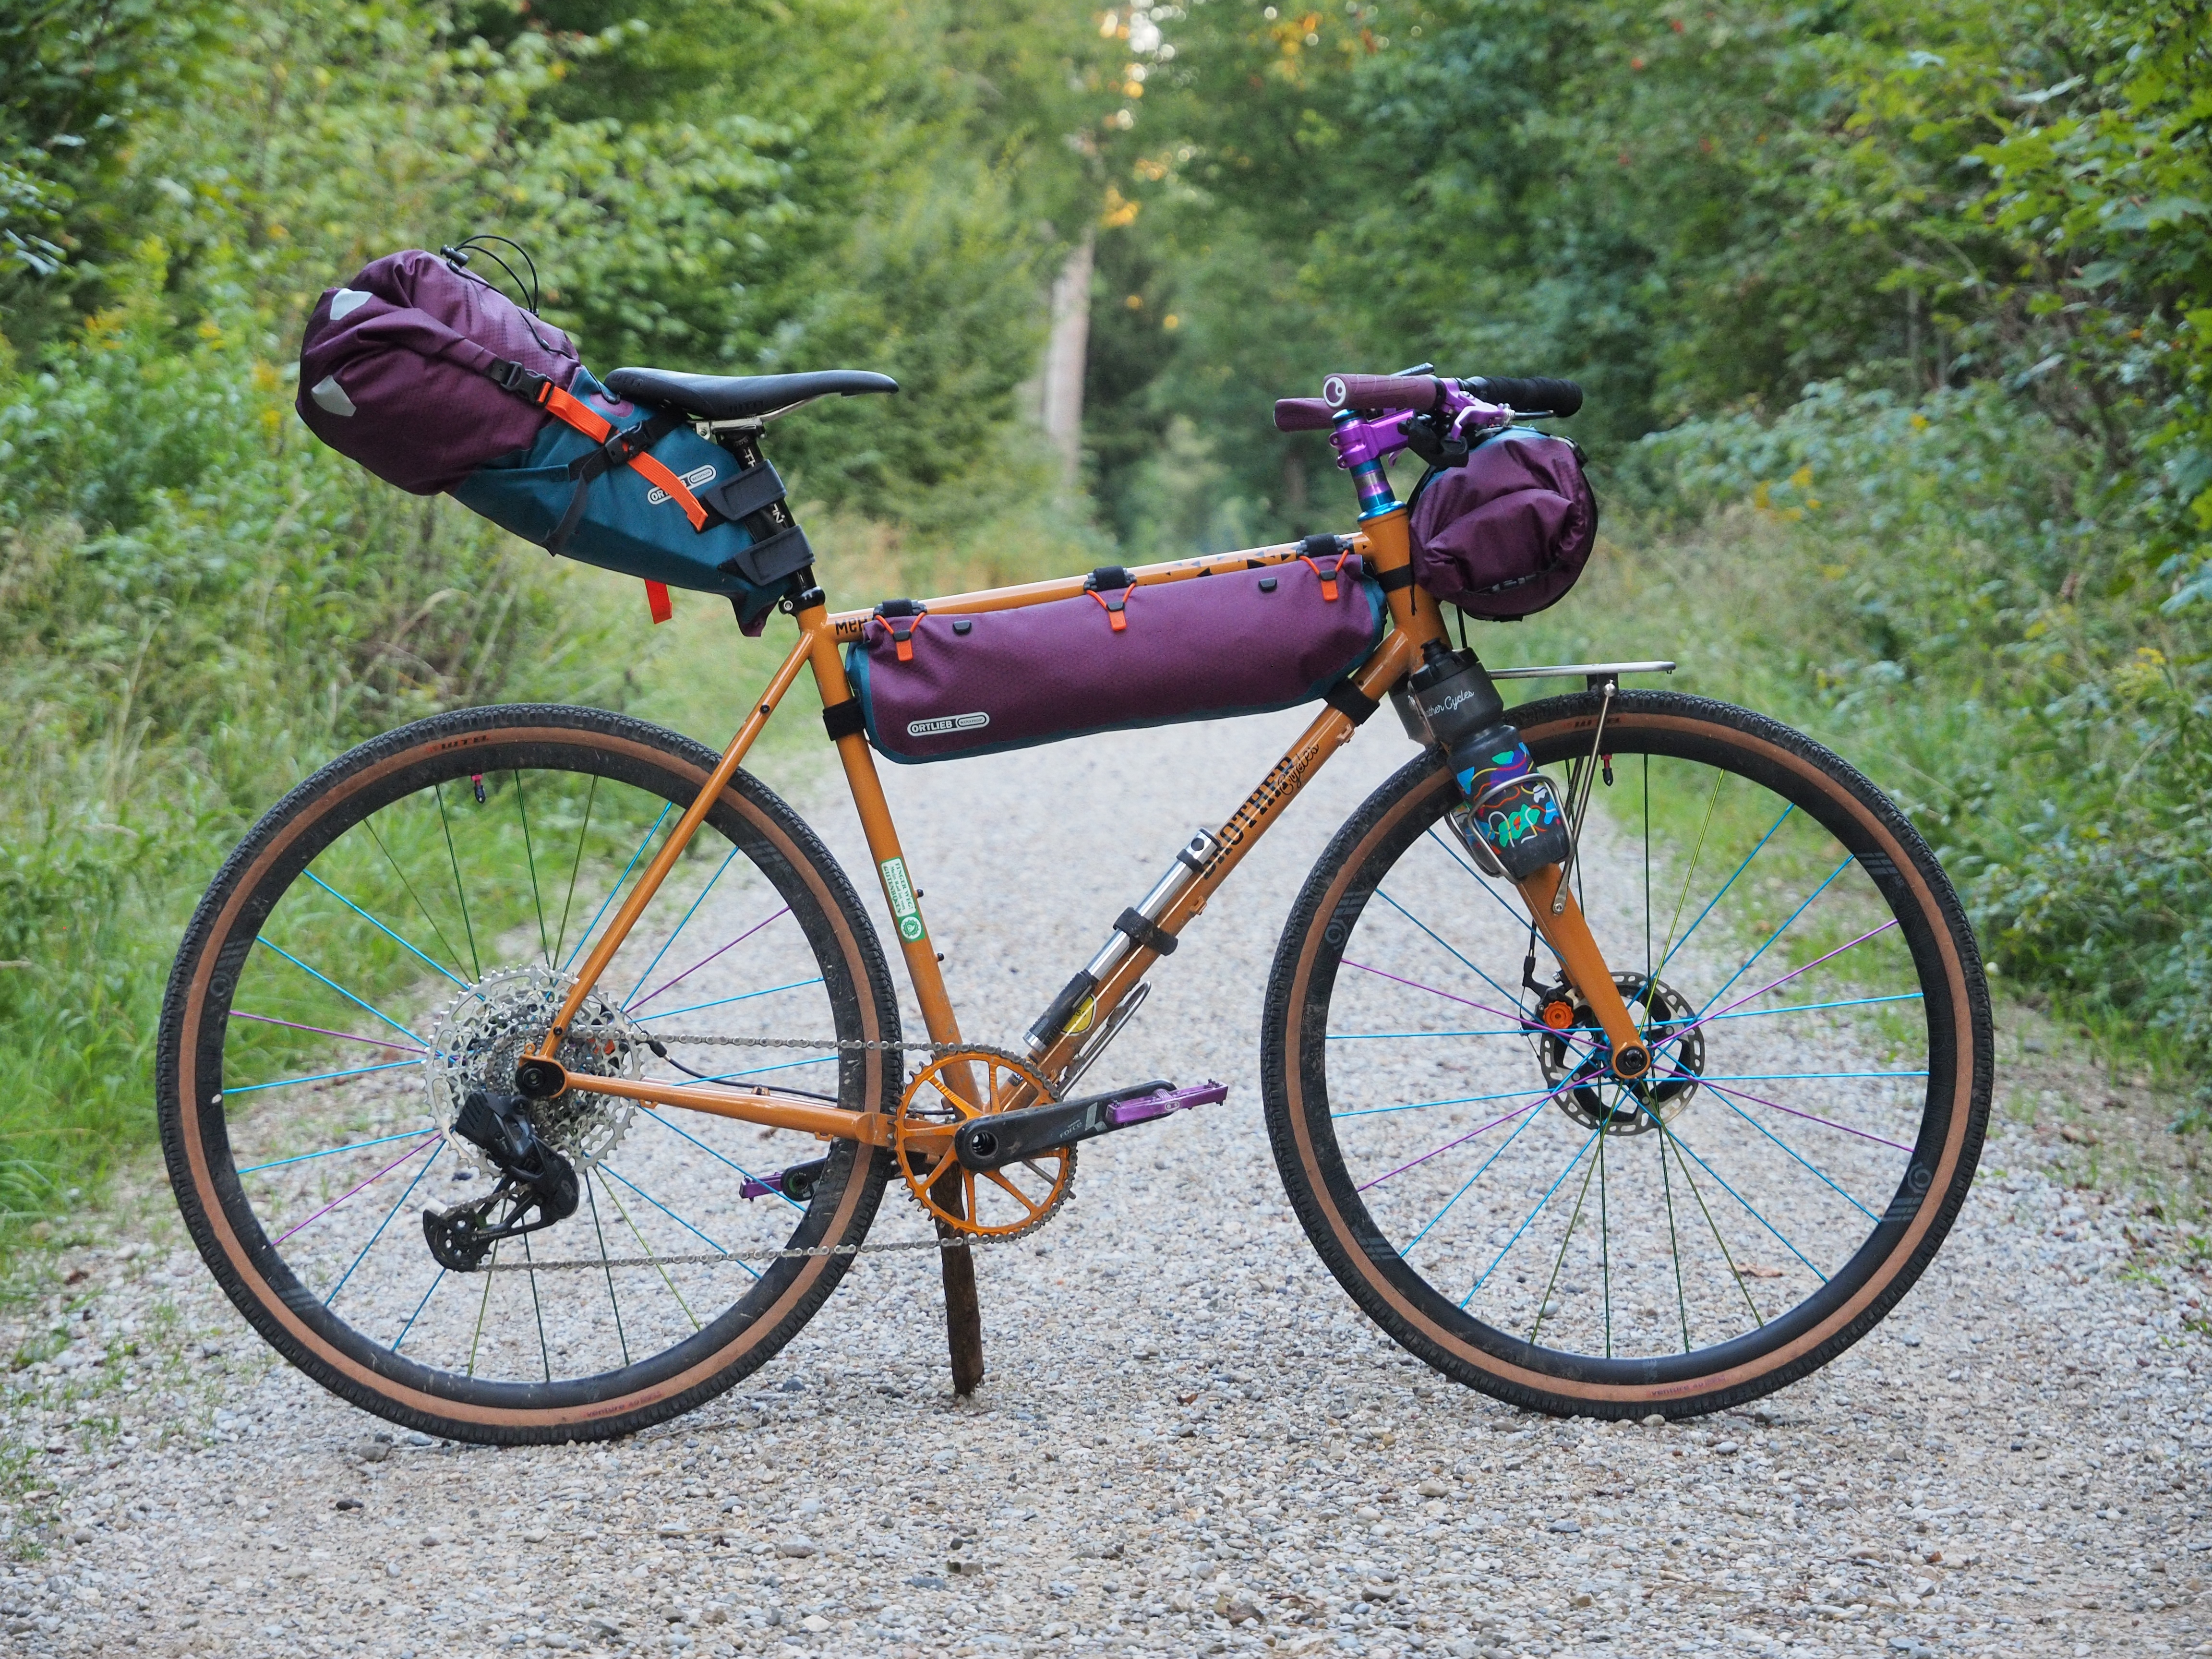 Ortlieb Bikepacking-Taschen: Limited Edition in bunten Farben